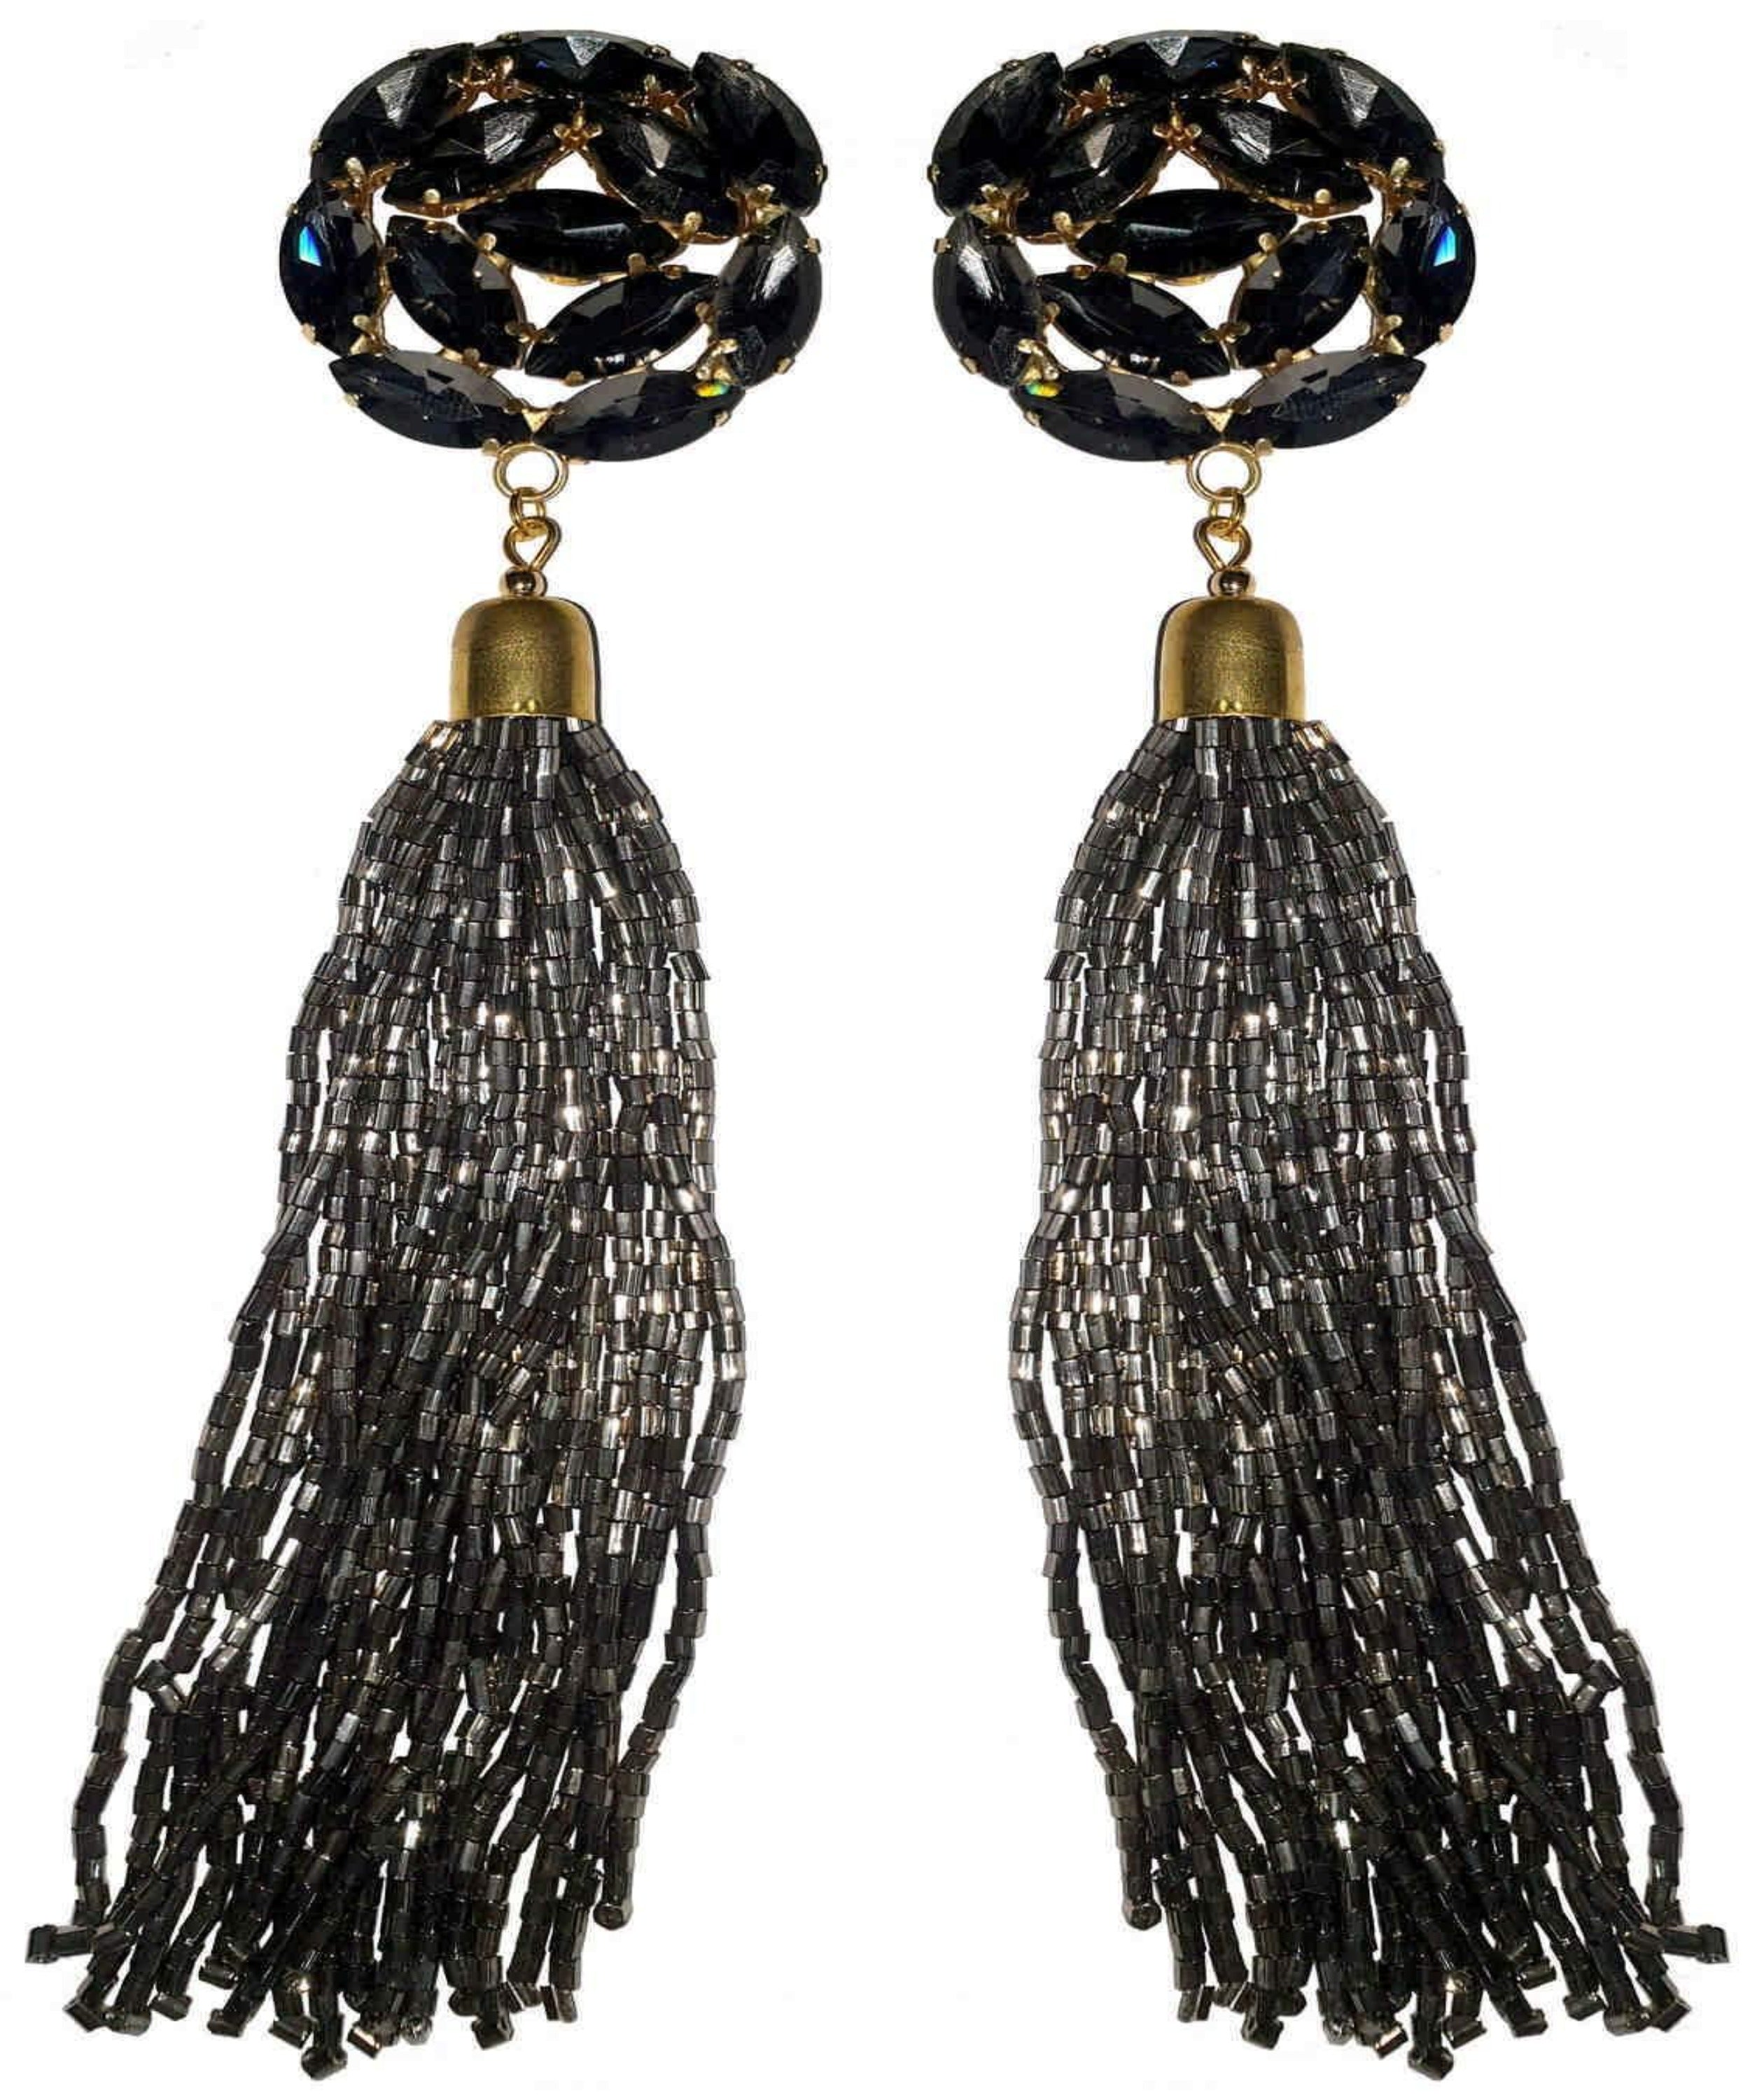 Graceful Black Long Thread Tassel Earrings for Women